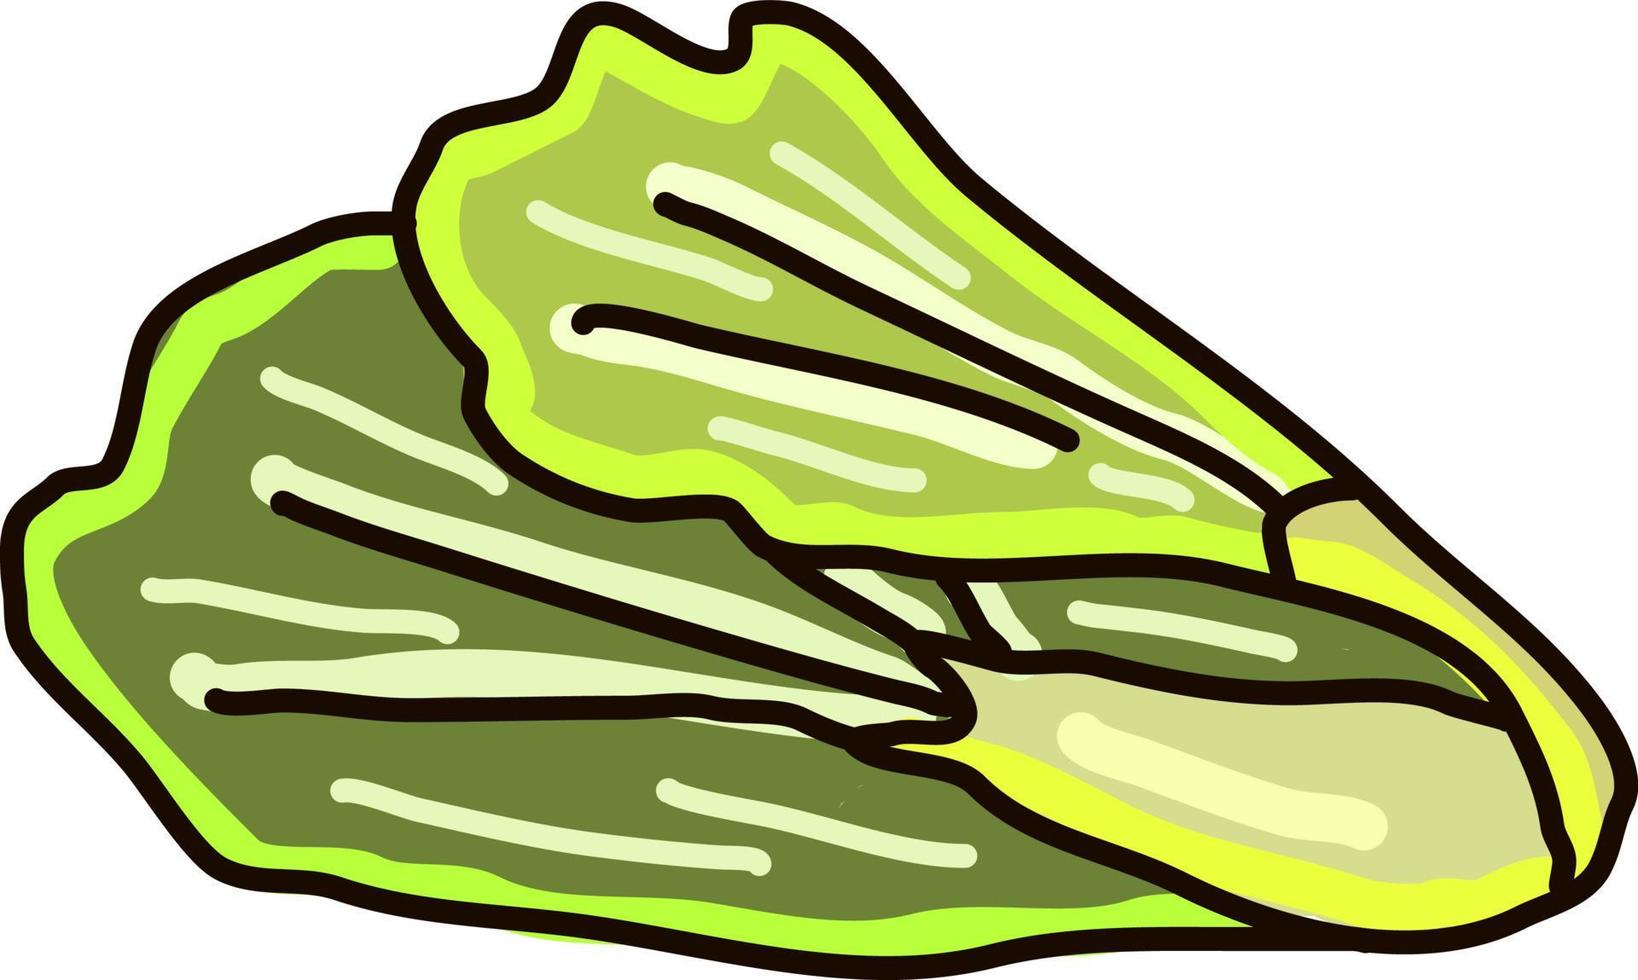 lechuga verde, ilustración, vector sobre fondo blanco.